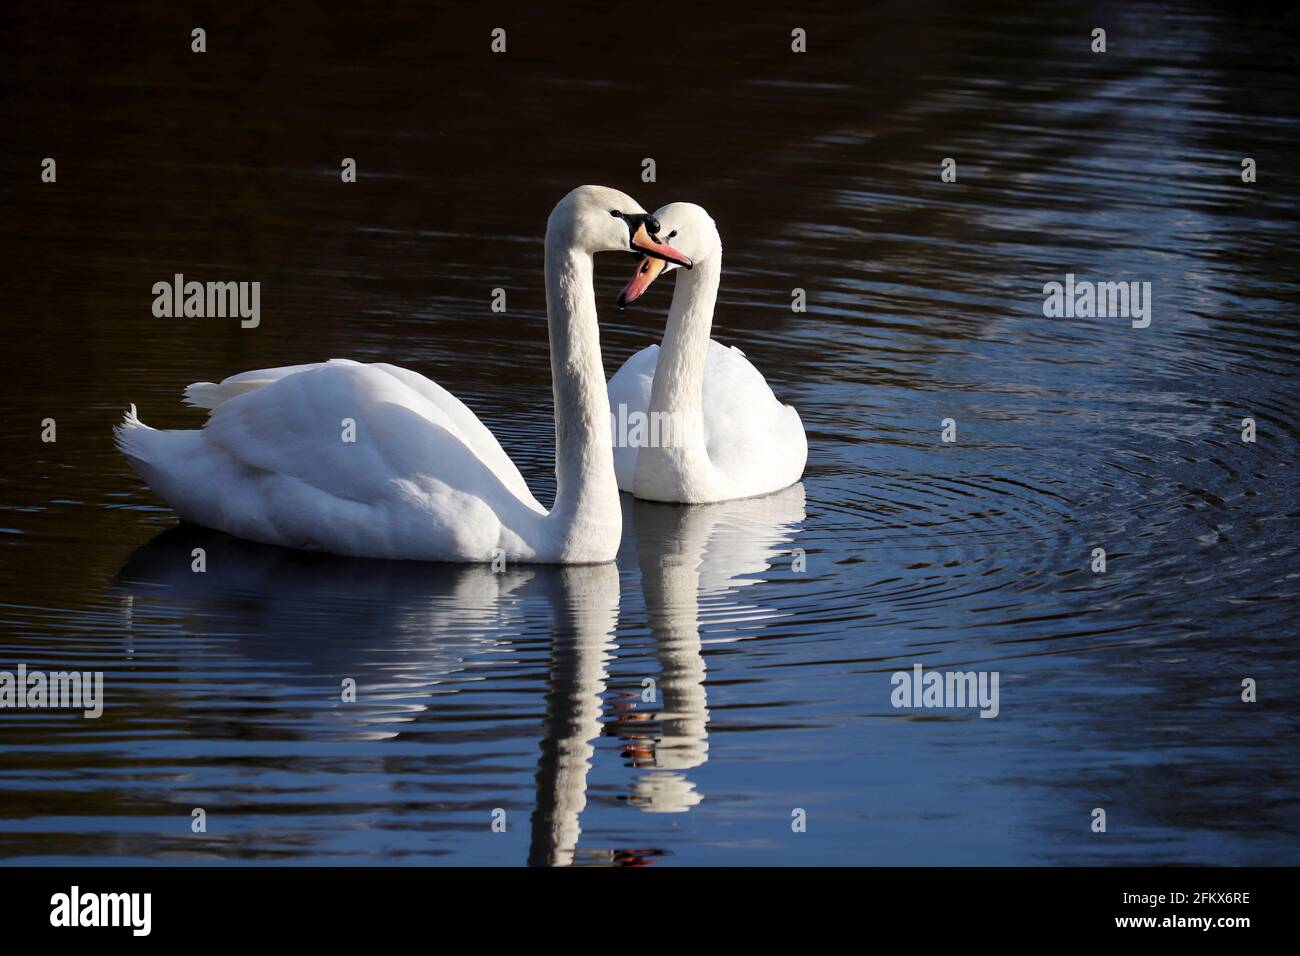 Coppia di cigni bianchi che nuotano su un lago, riflesso sulla superficie dell'acqua. Scena romantica, concetto di amore e lealtà Foto Stock